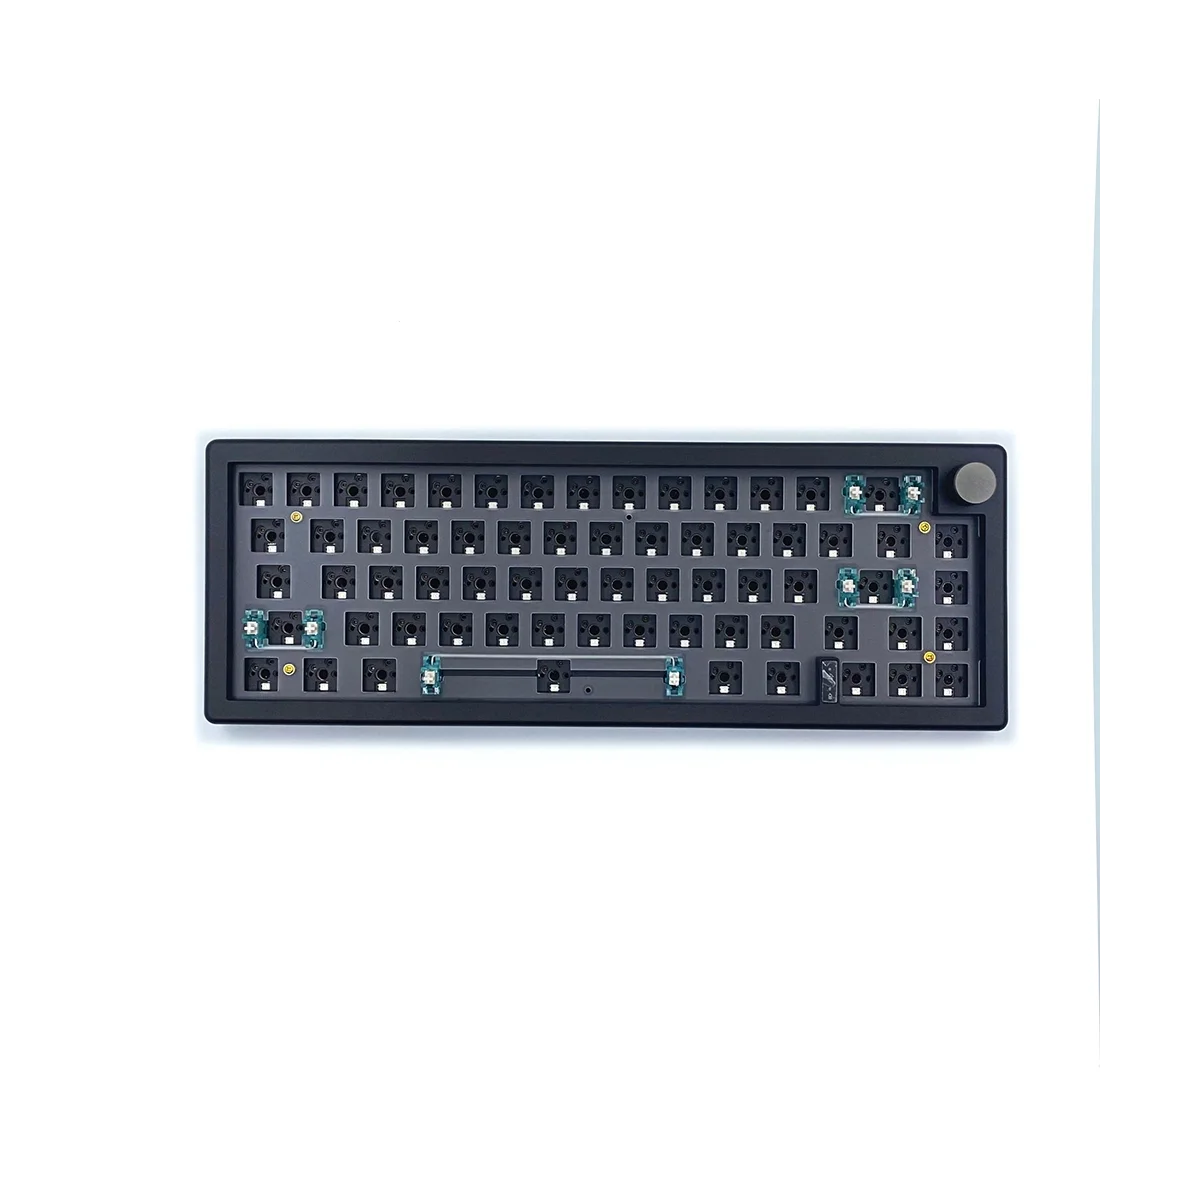 

Горячая Распродажа, набор механической клавиатуры GMK67 с RGB подсветкой, Беспроводная Bluetooth клавиатура 2,4G, 3 режима, черная клавиатура для самостоятельной сборки на заказ